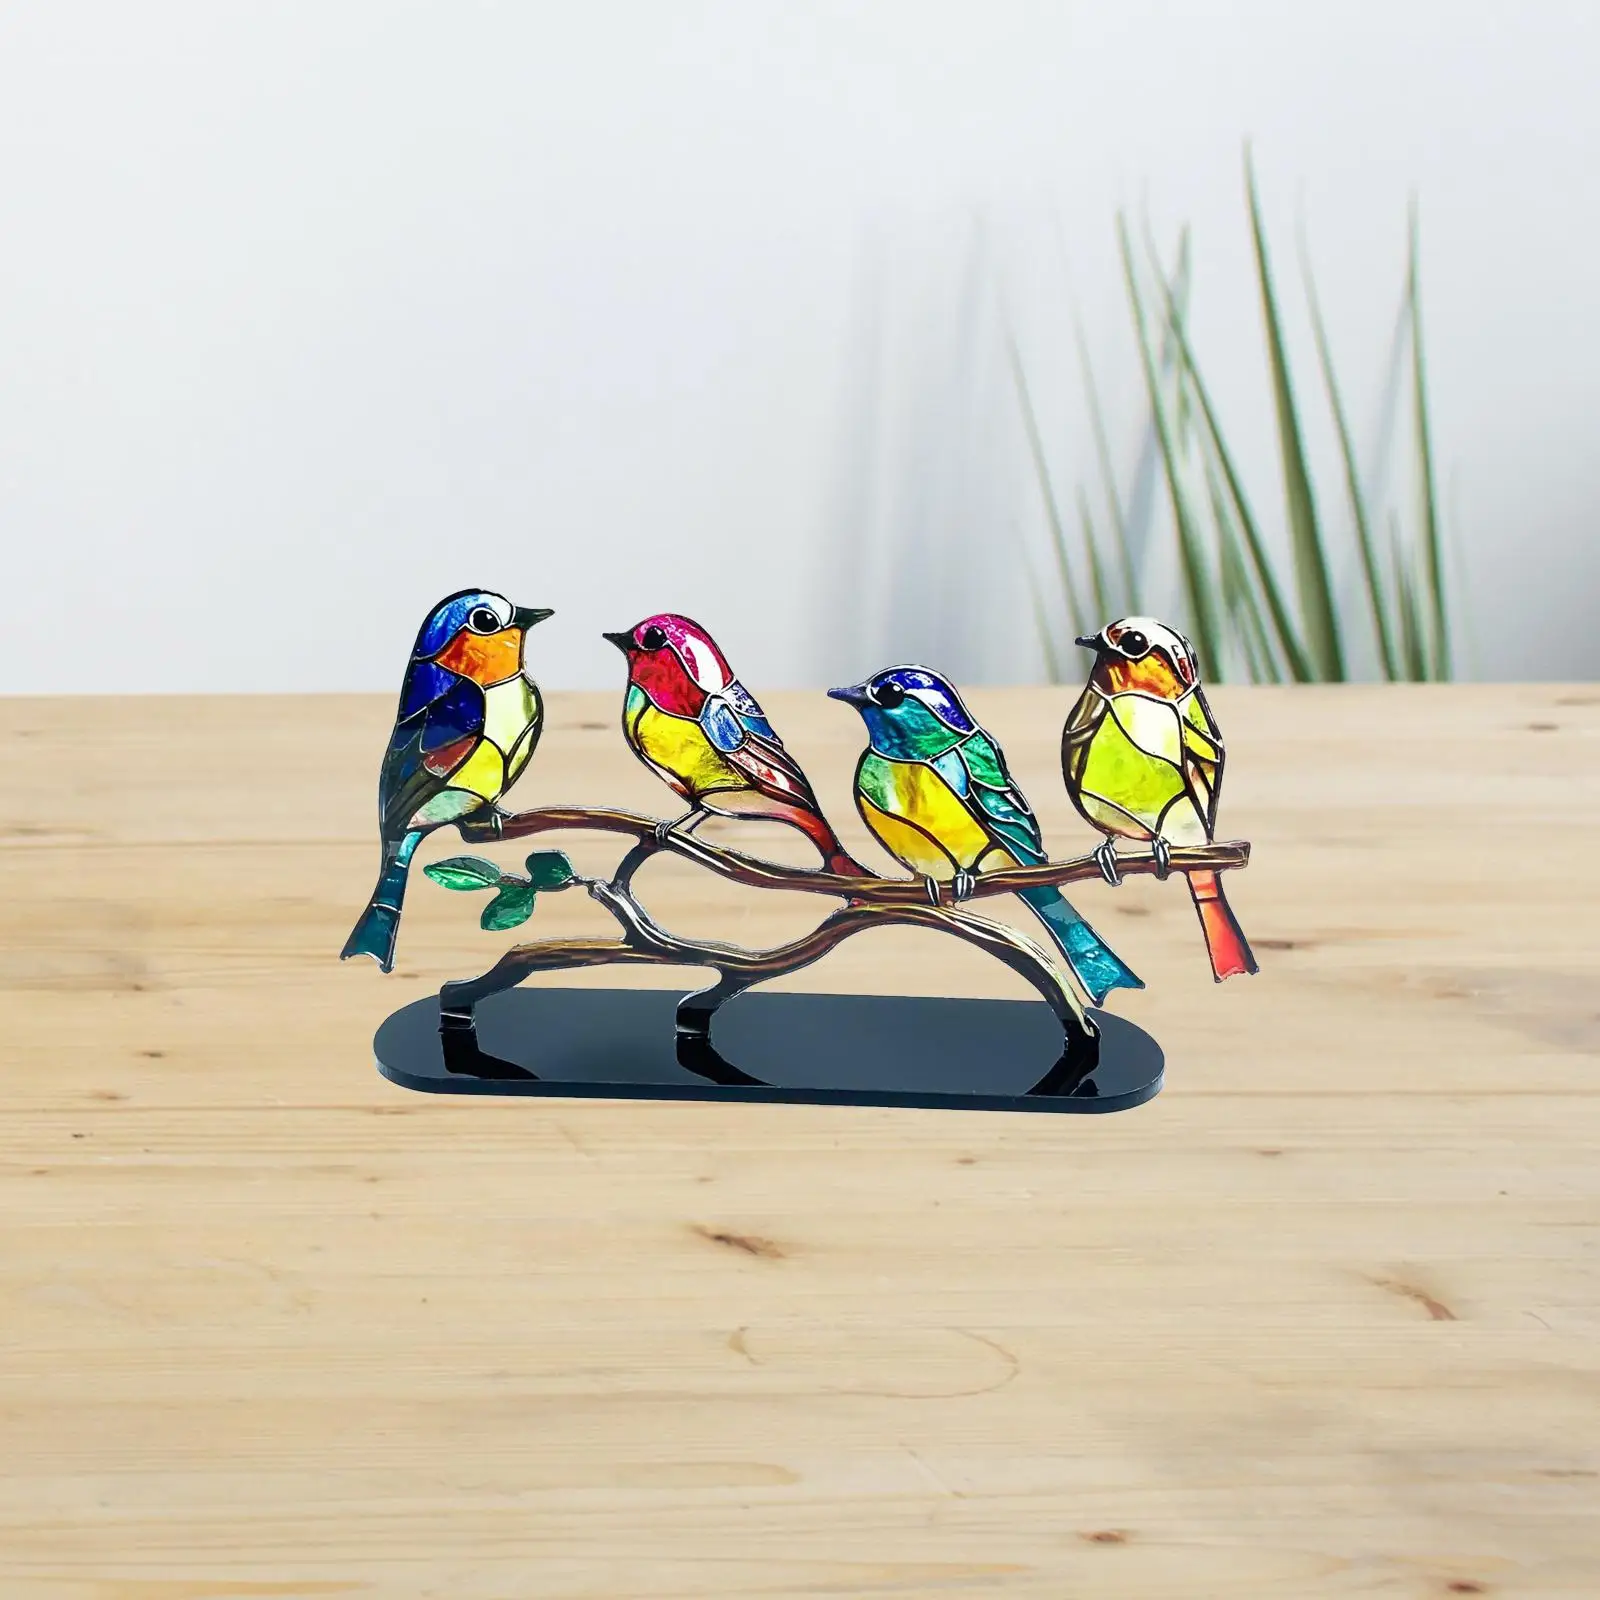 Birds Desktop Ornament Artwork Craft Figurines Centerpiece Bird Statues Bird Sculpture for Car Livingroom Party Tabletop Indoor